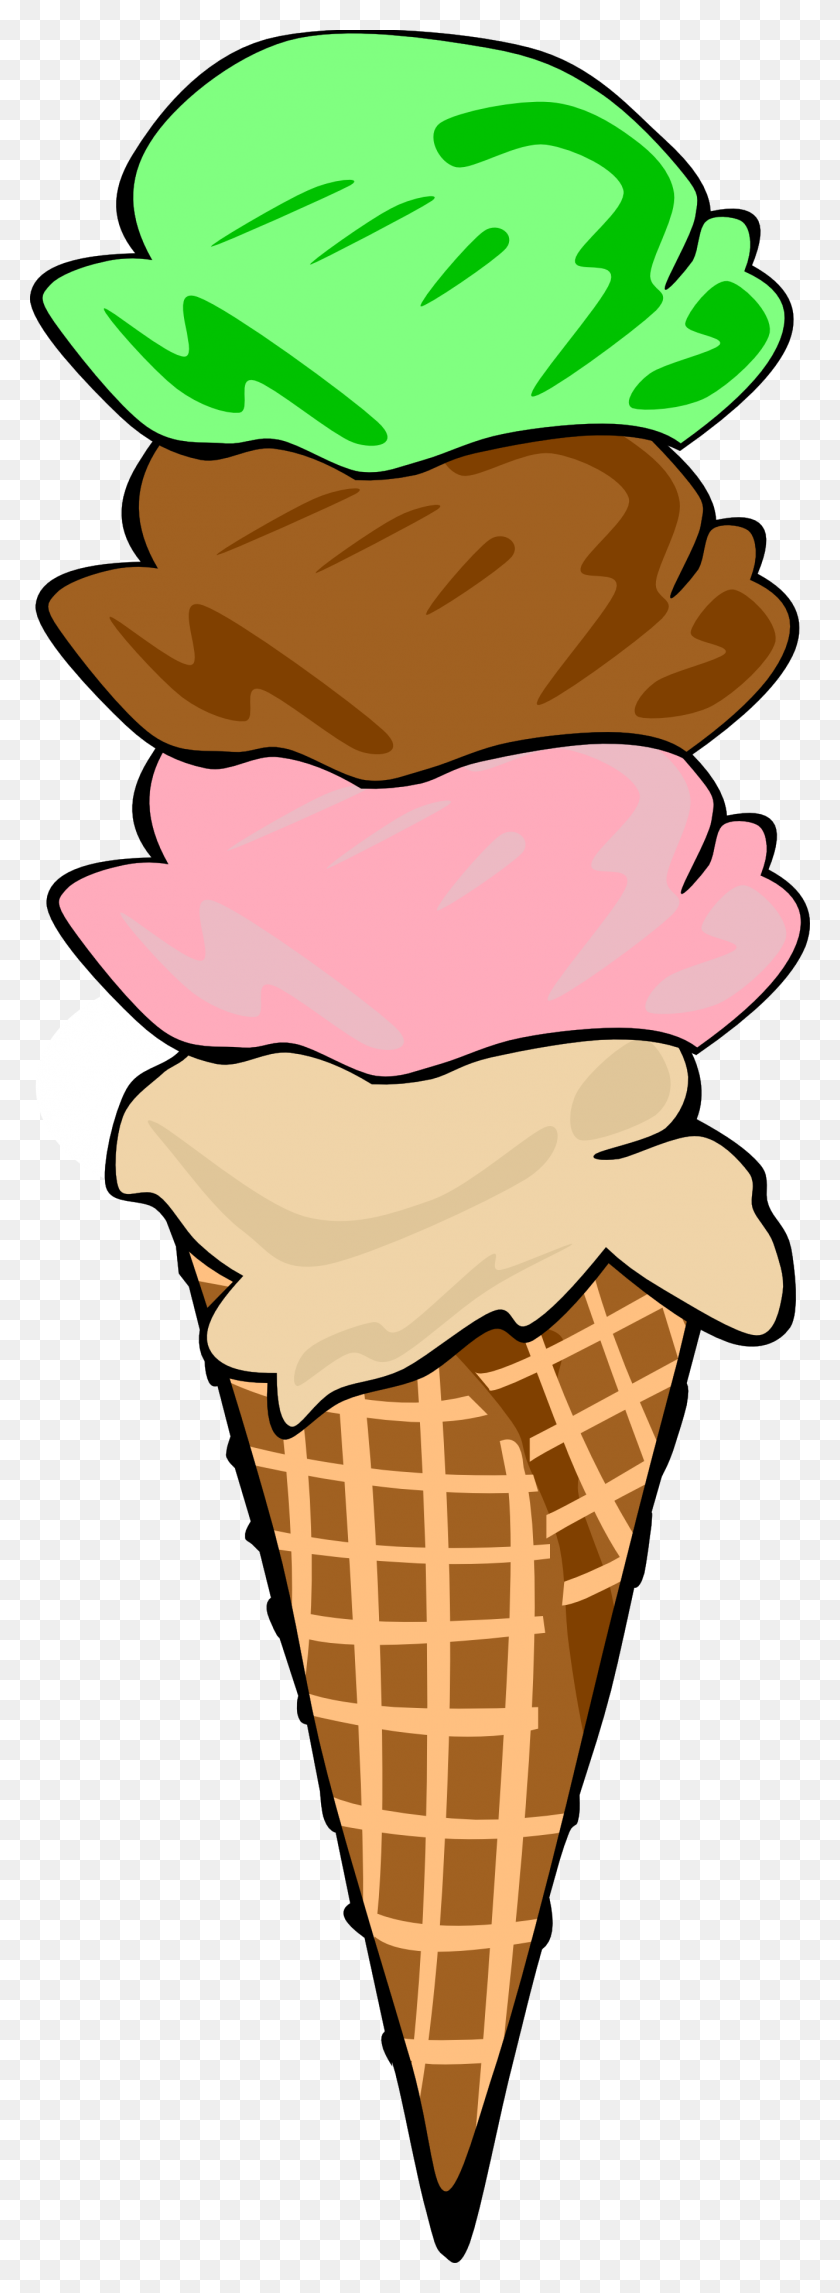 1332x3814 Мороженое. Посмотрите На Изображения Клипартов С Мороженым - Мороженое С Мороженым, Черно-Белое.